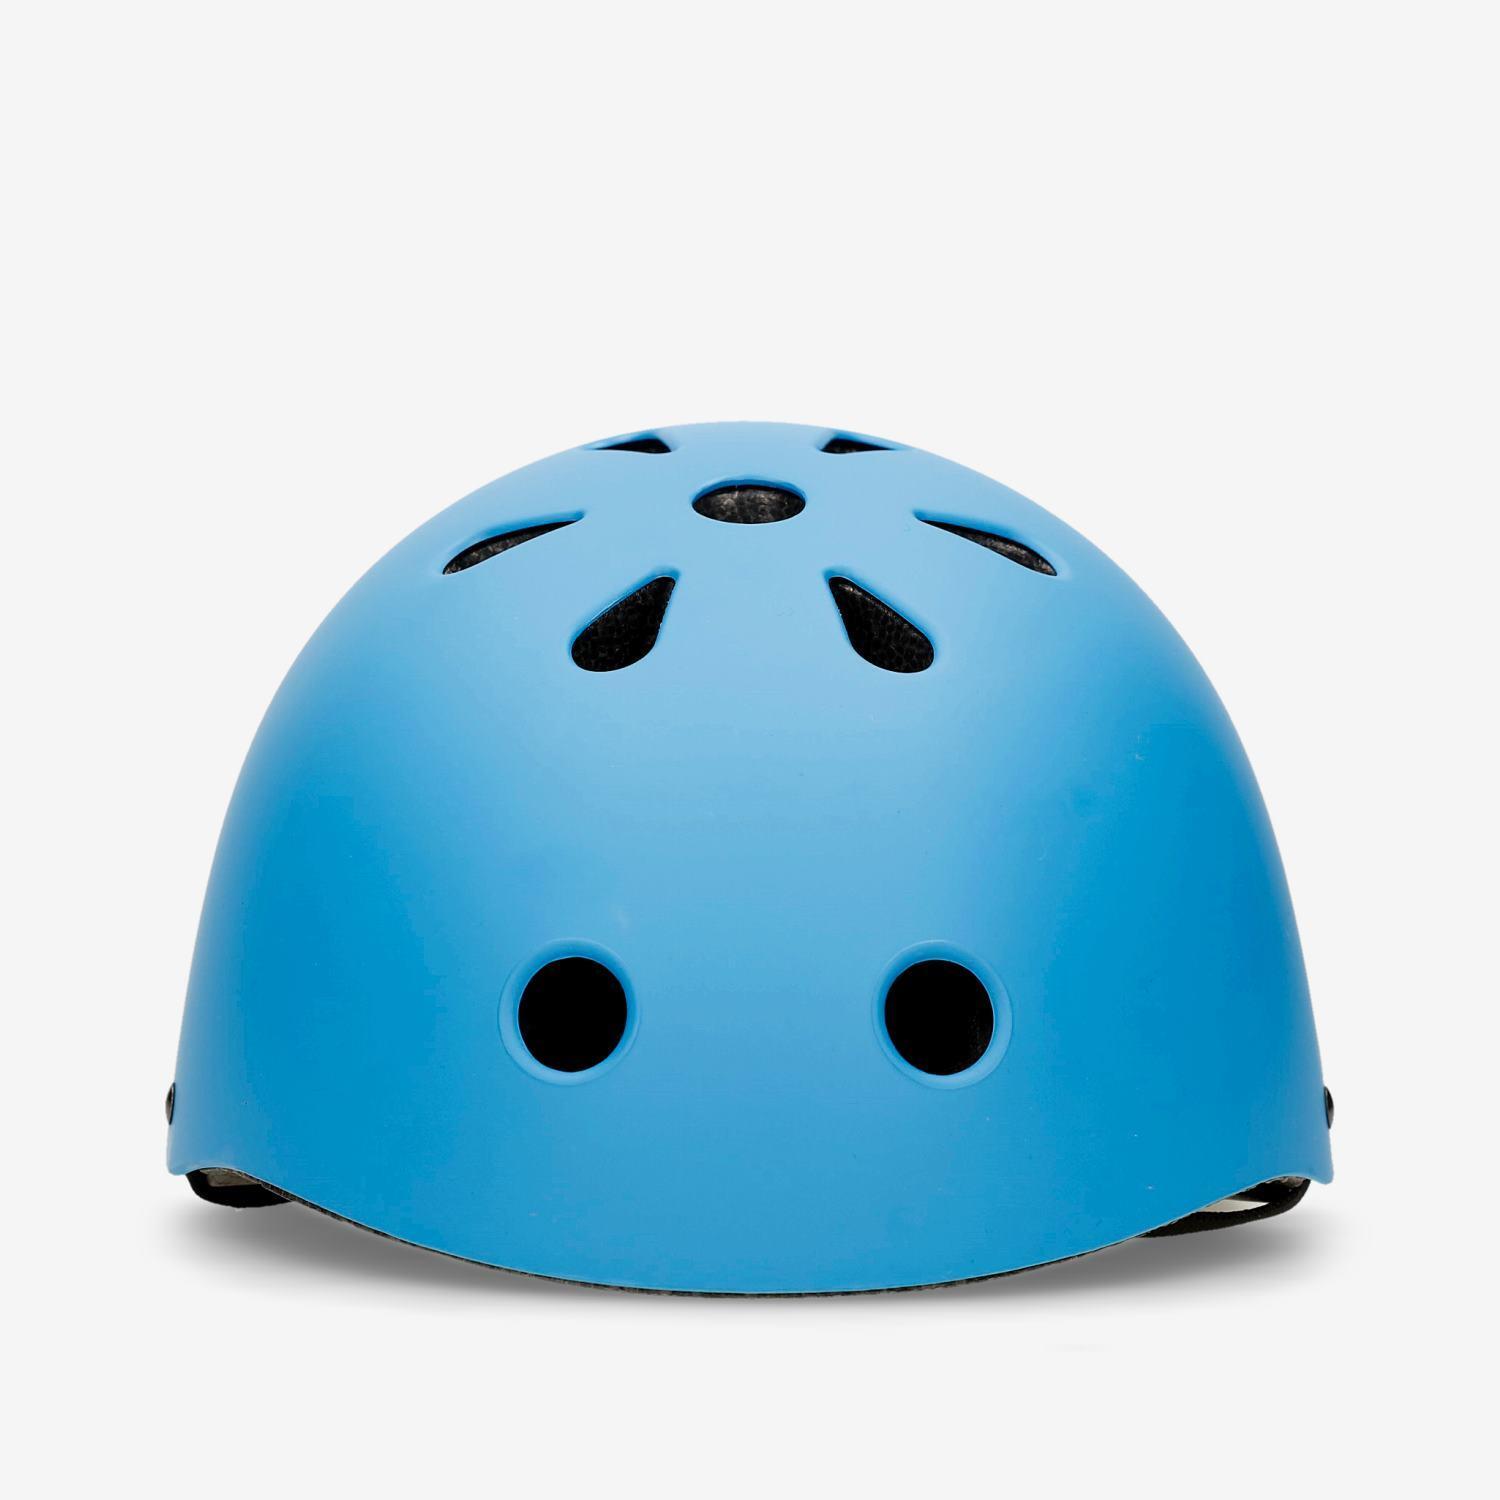 Casque Roller Mitical-Bleu-Accessoires de Sécurité sports taille S